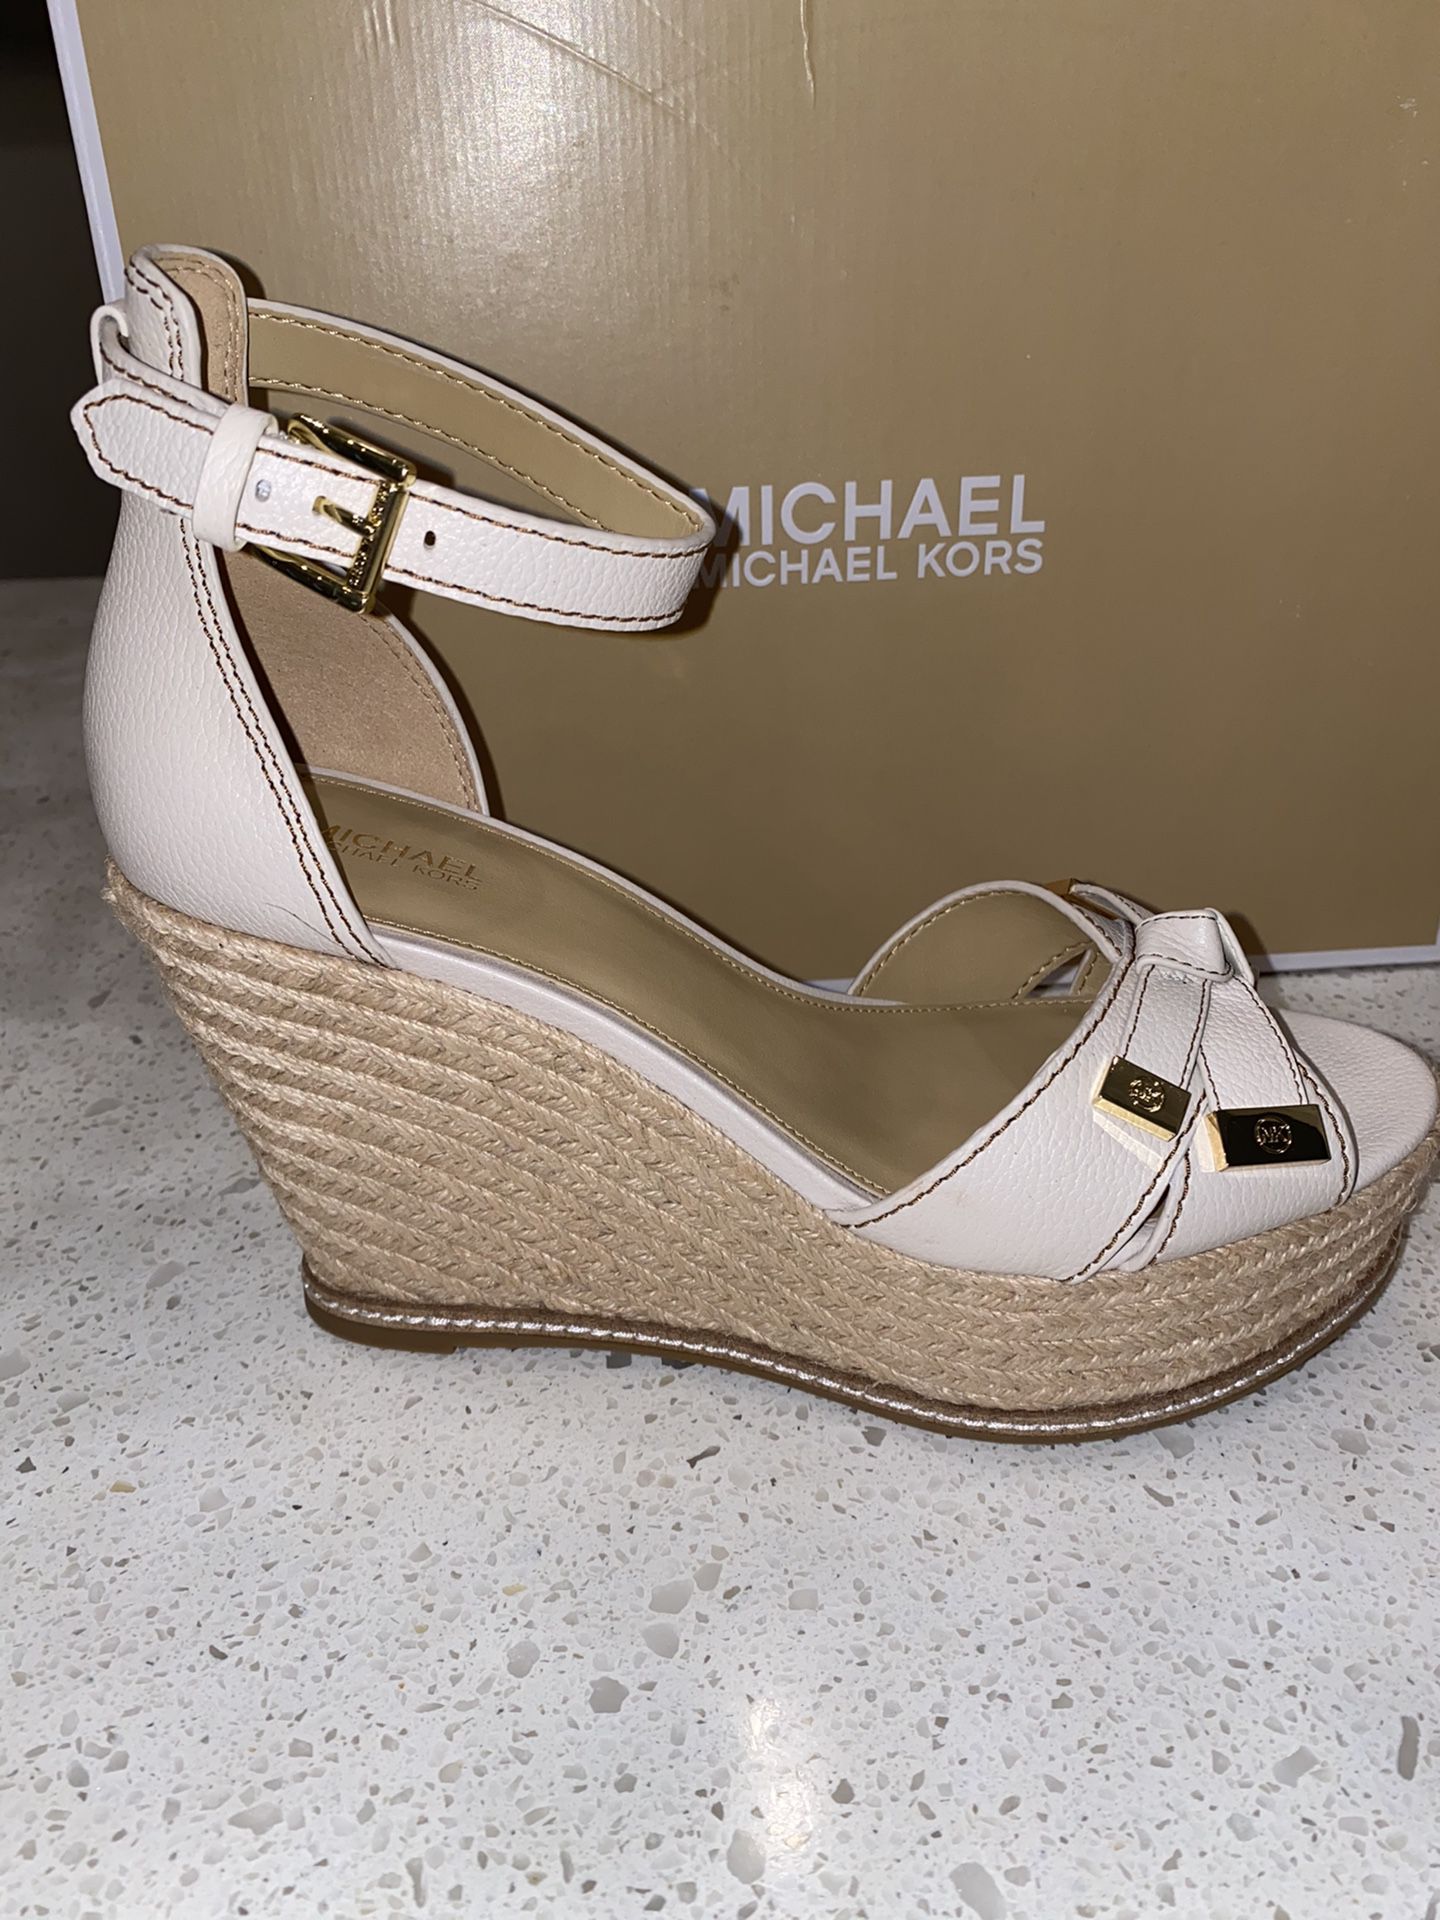 Women’s Size 9 Michael Kors Shoes